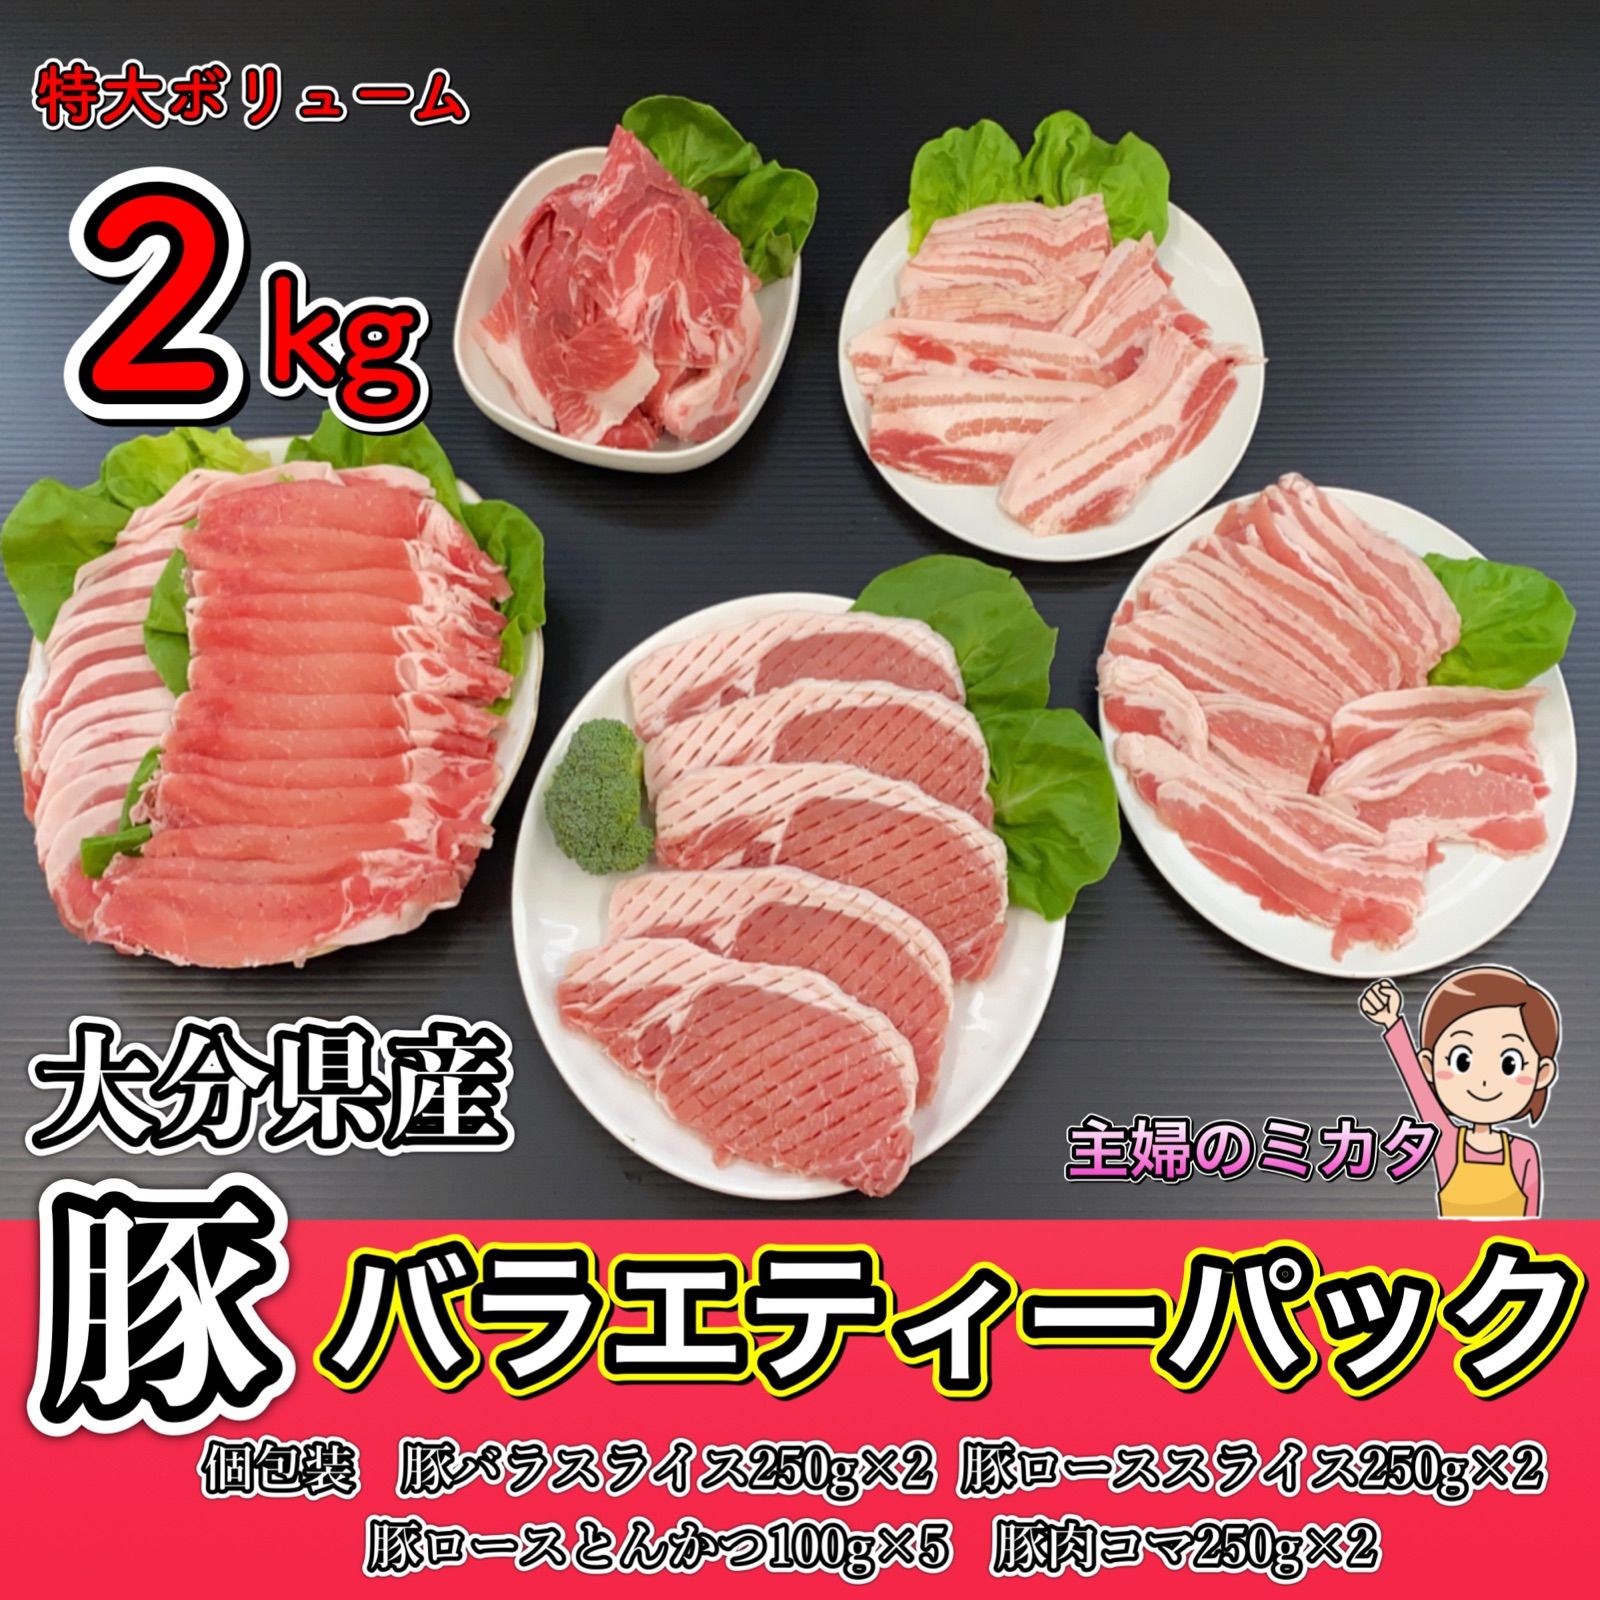 【★5評価】国産 豚肉のバラエティーパック❣️訳あり❣️総重量2kg🐷-0